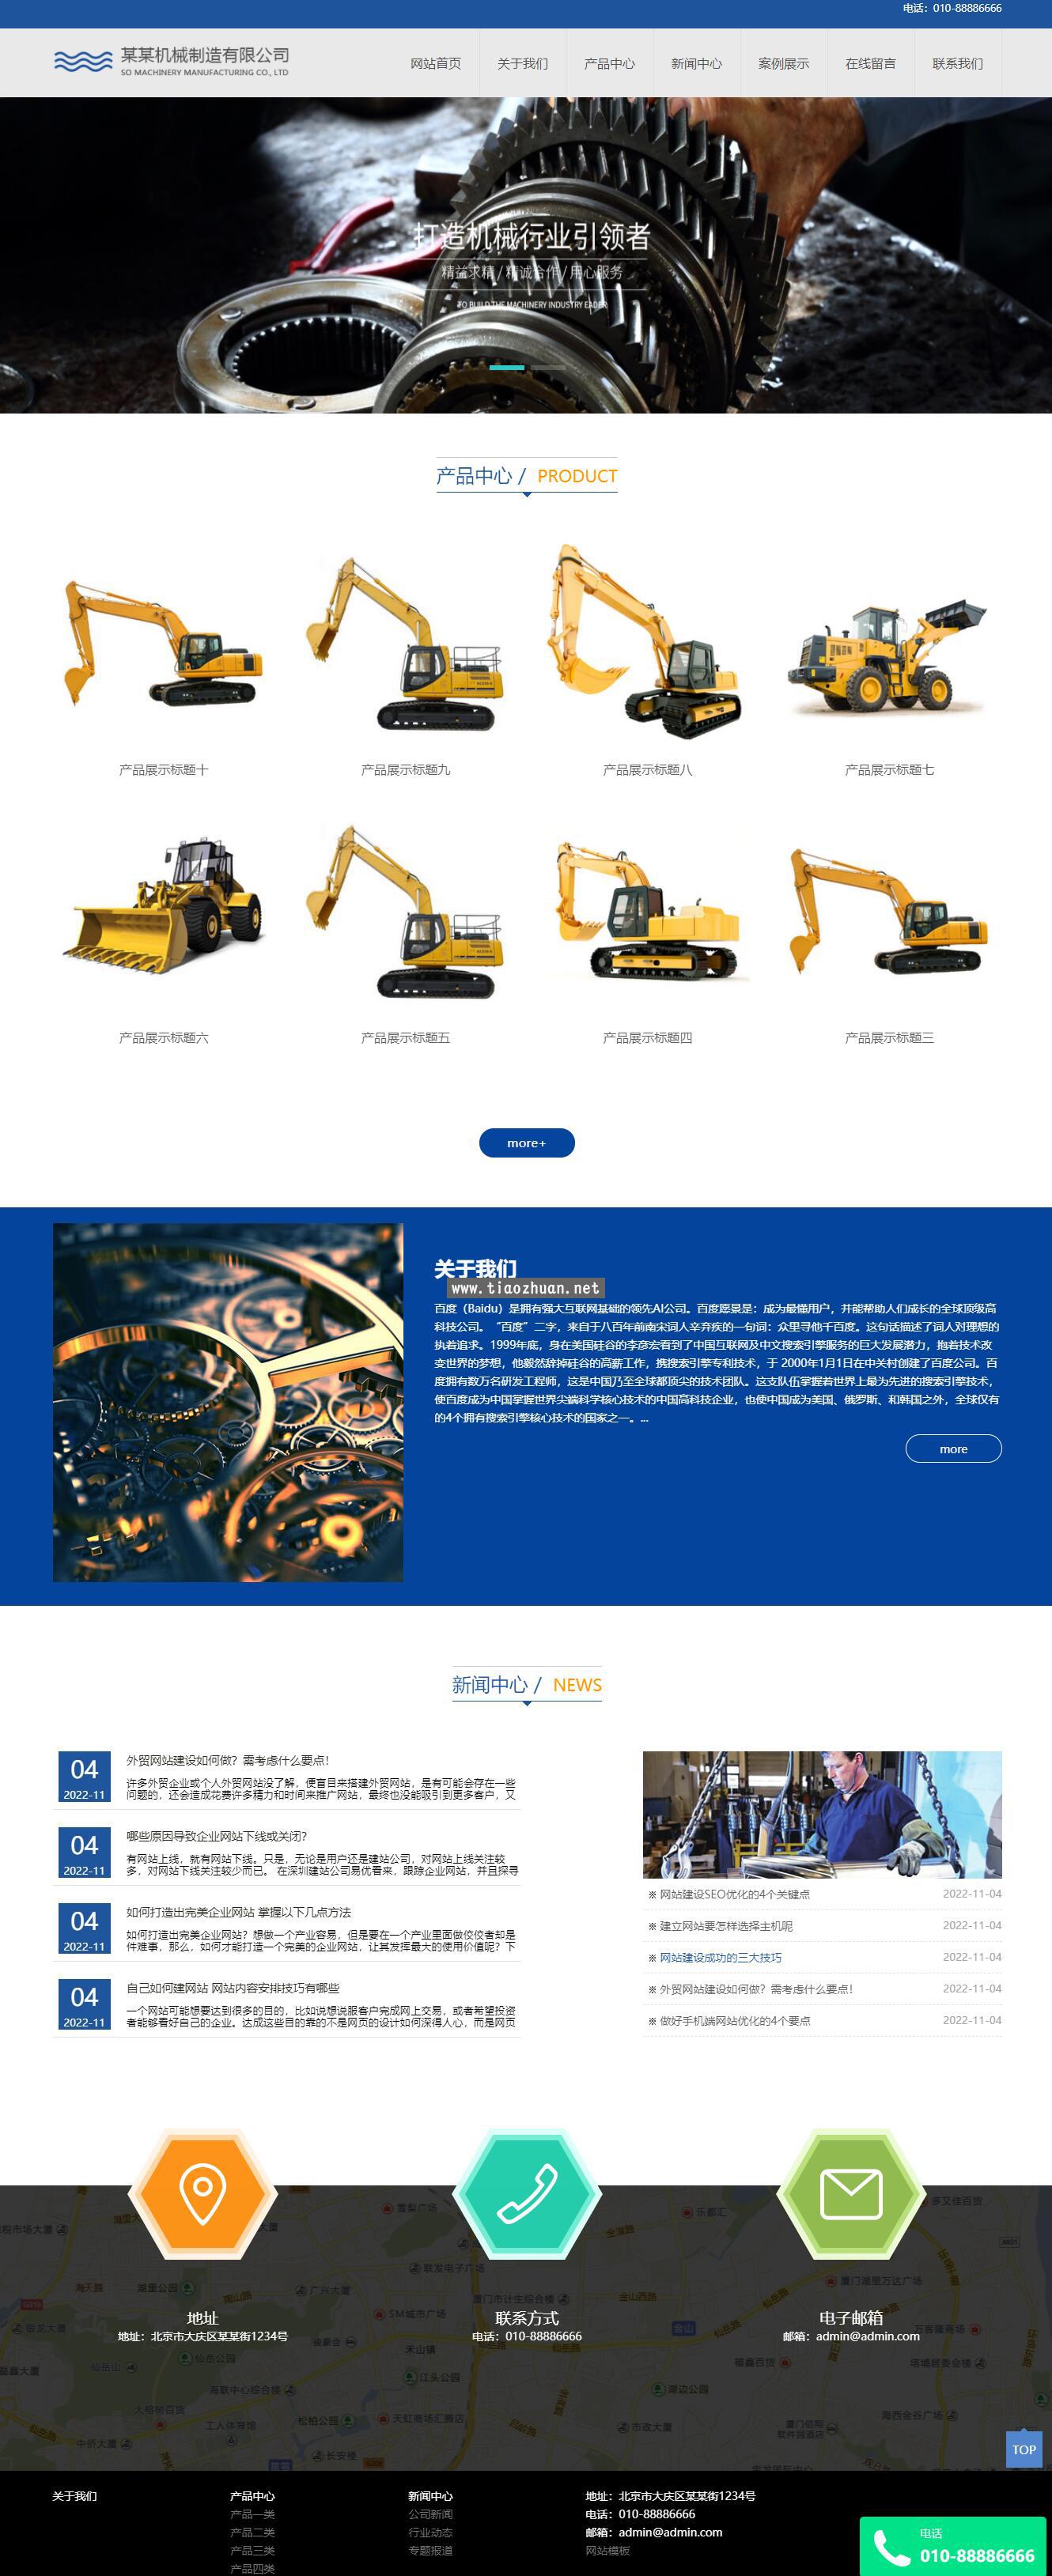 大型机械工业制造类网站pbootcms模板 重工机械设备制造公司源码下载